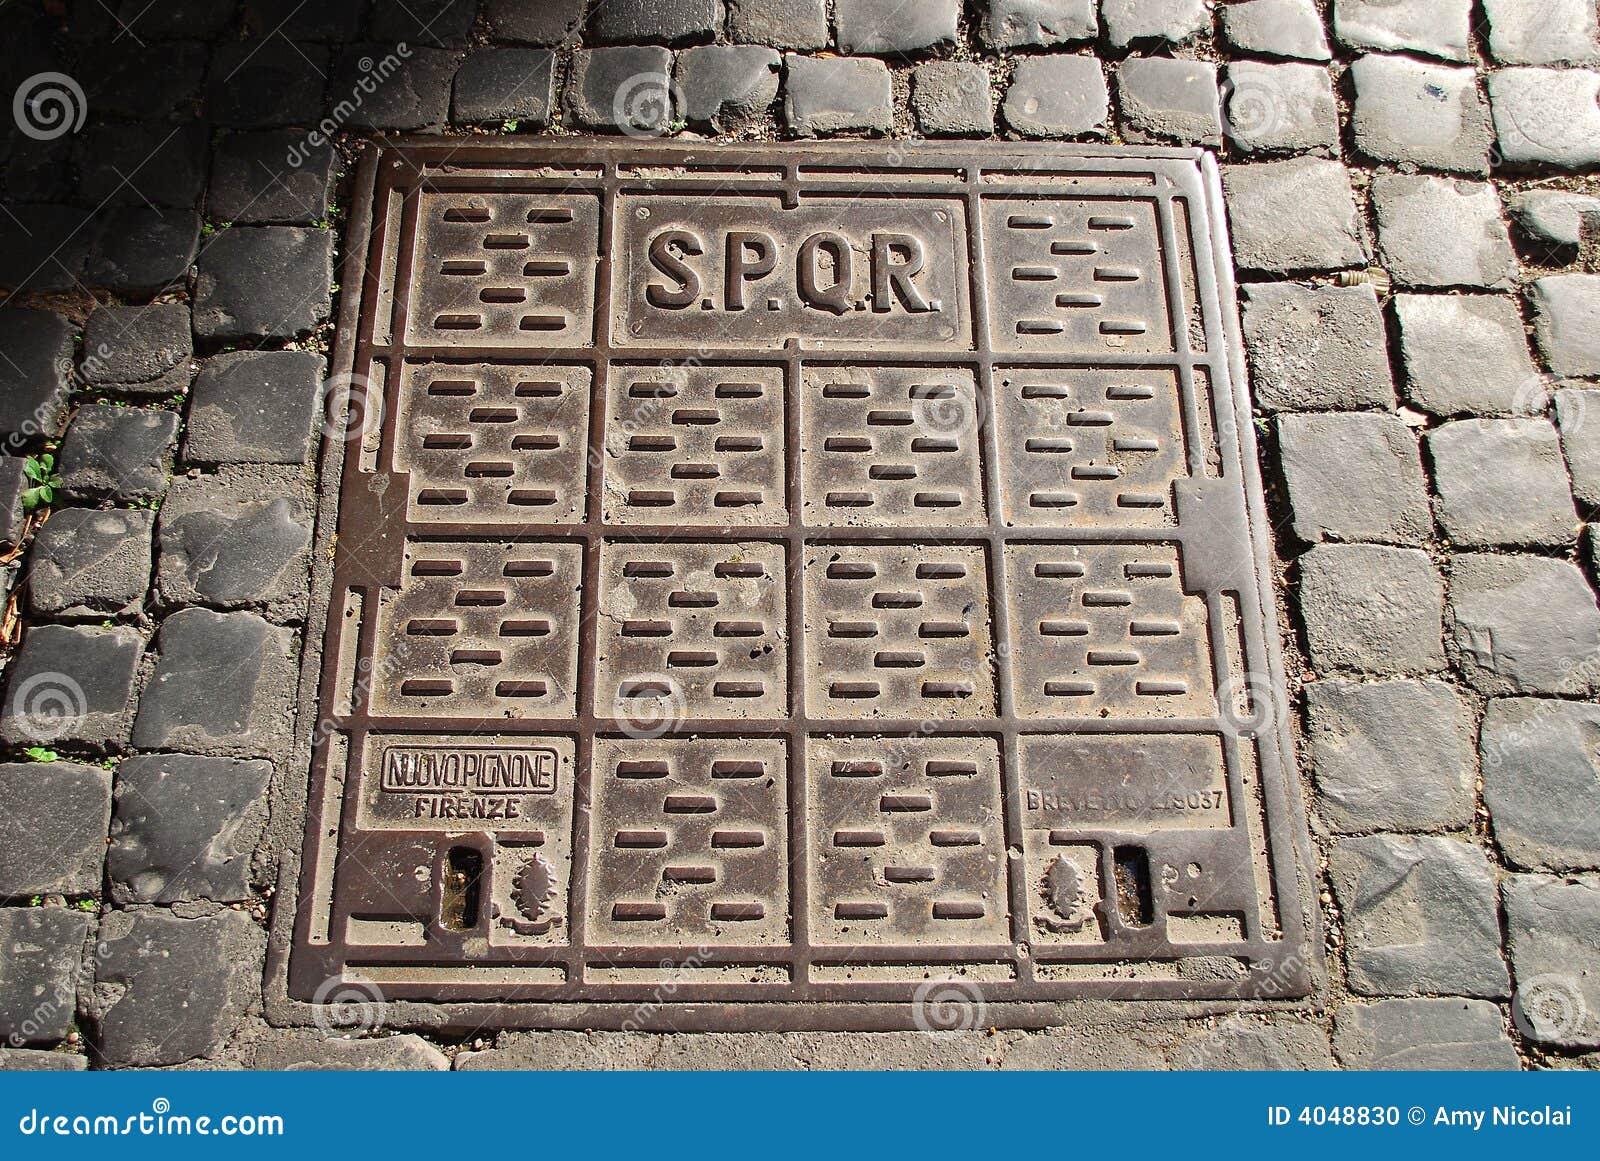 spqr-manhole-cover-4048830.jpg